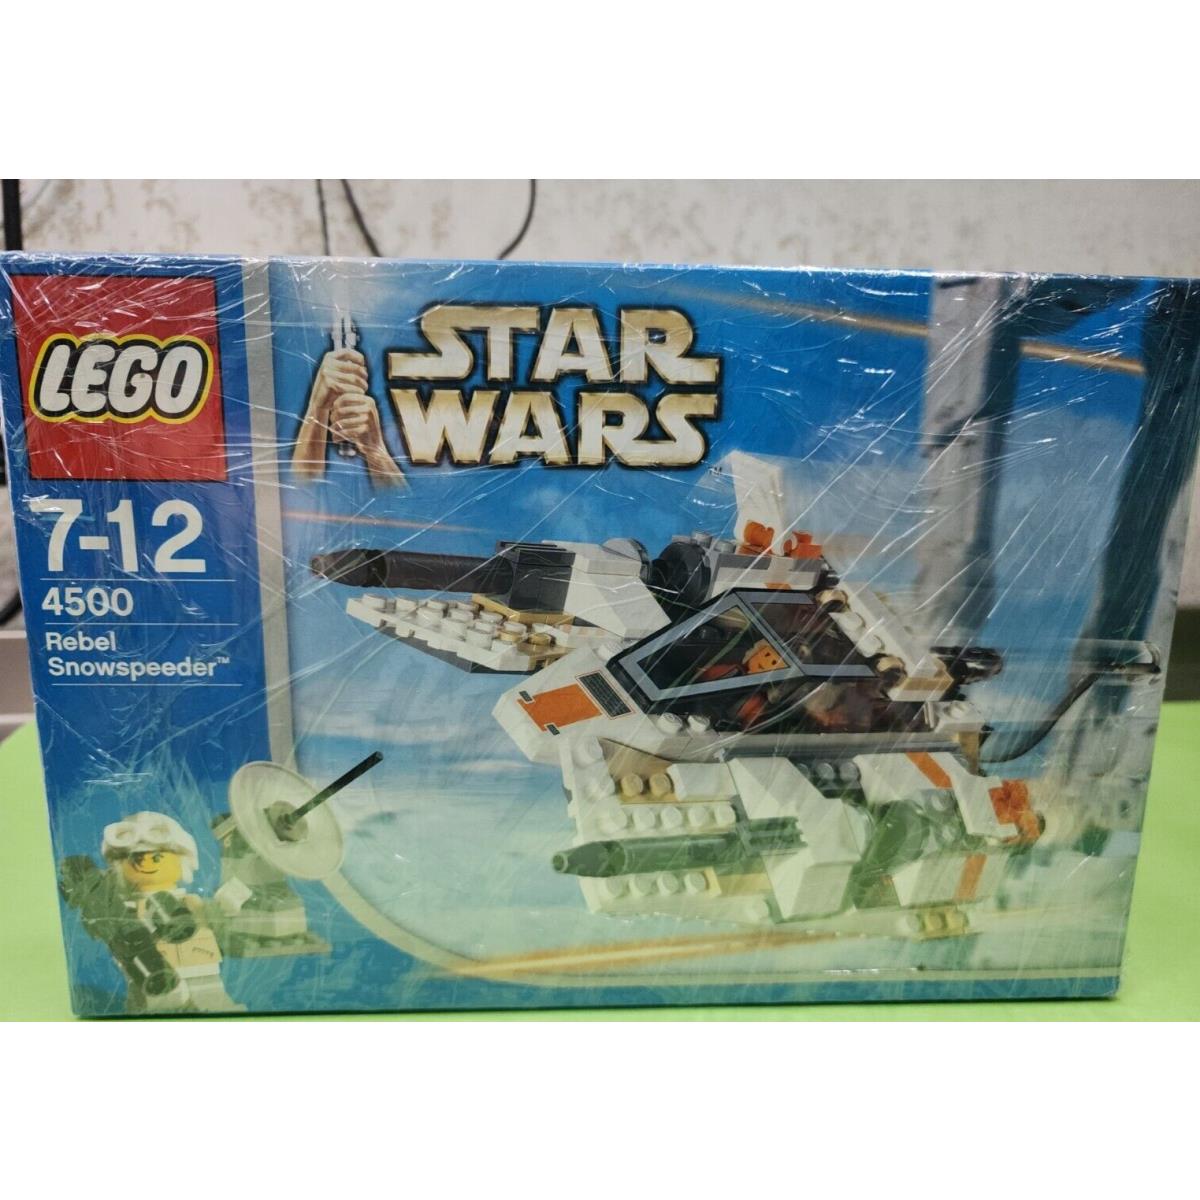 Lego Star Wars: Rebel Snowspeeder 4500